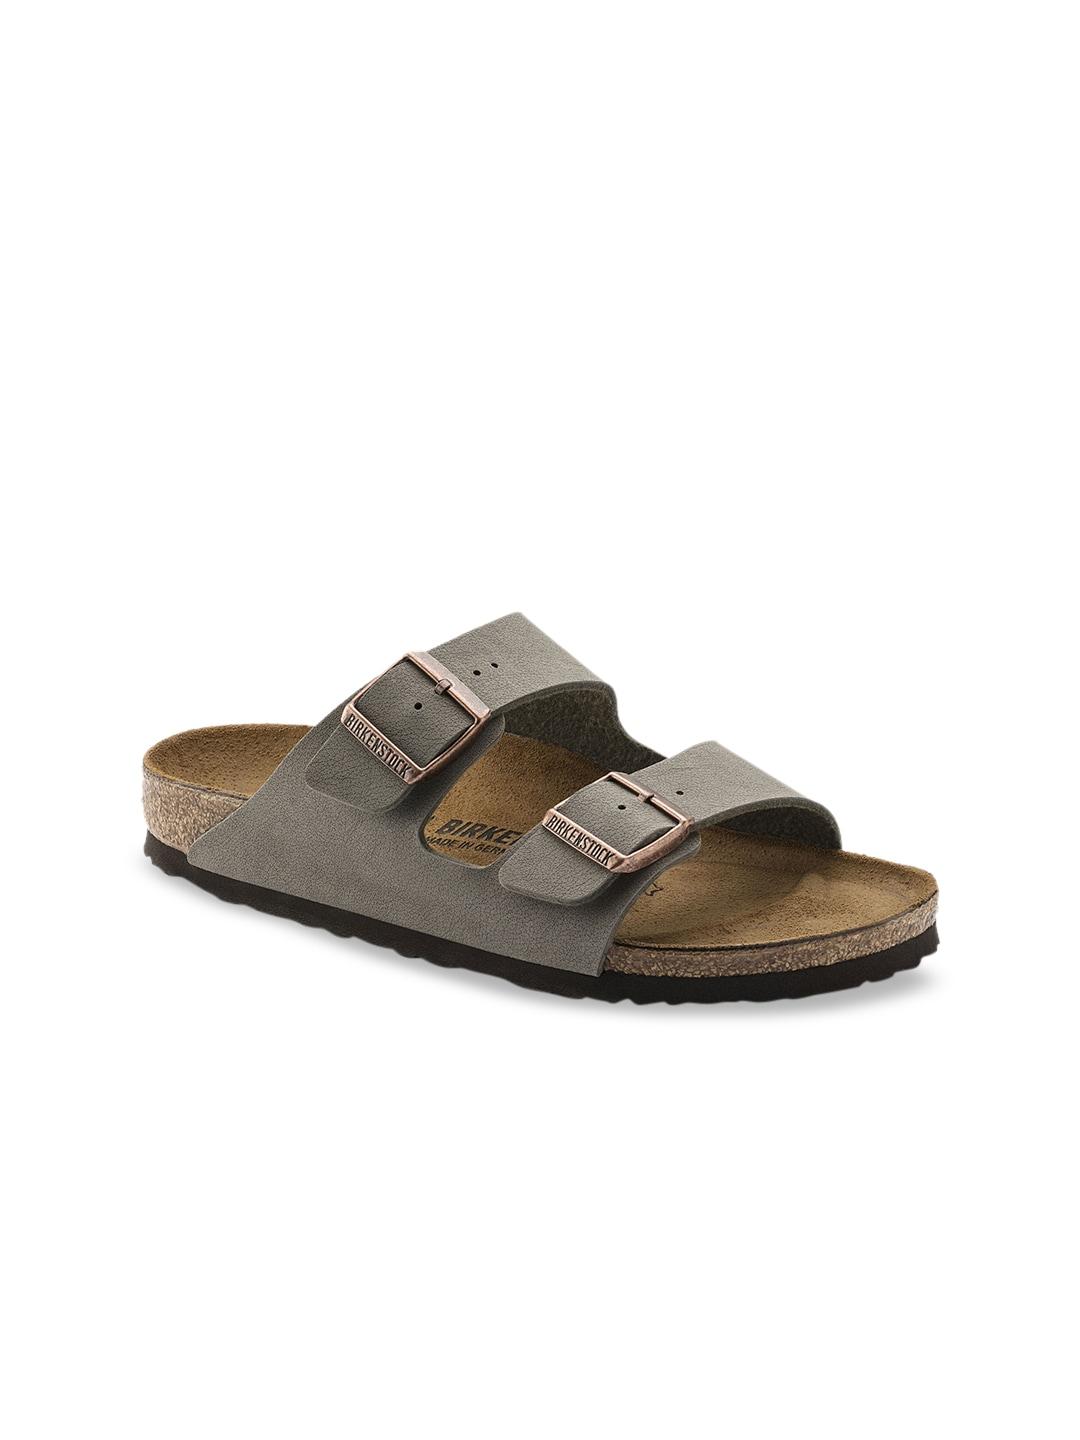 birkenstock unisex grey & brown arizona birko-flor nubuck comfort narrow width sandals